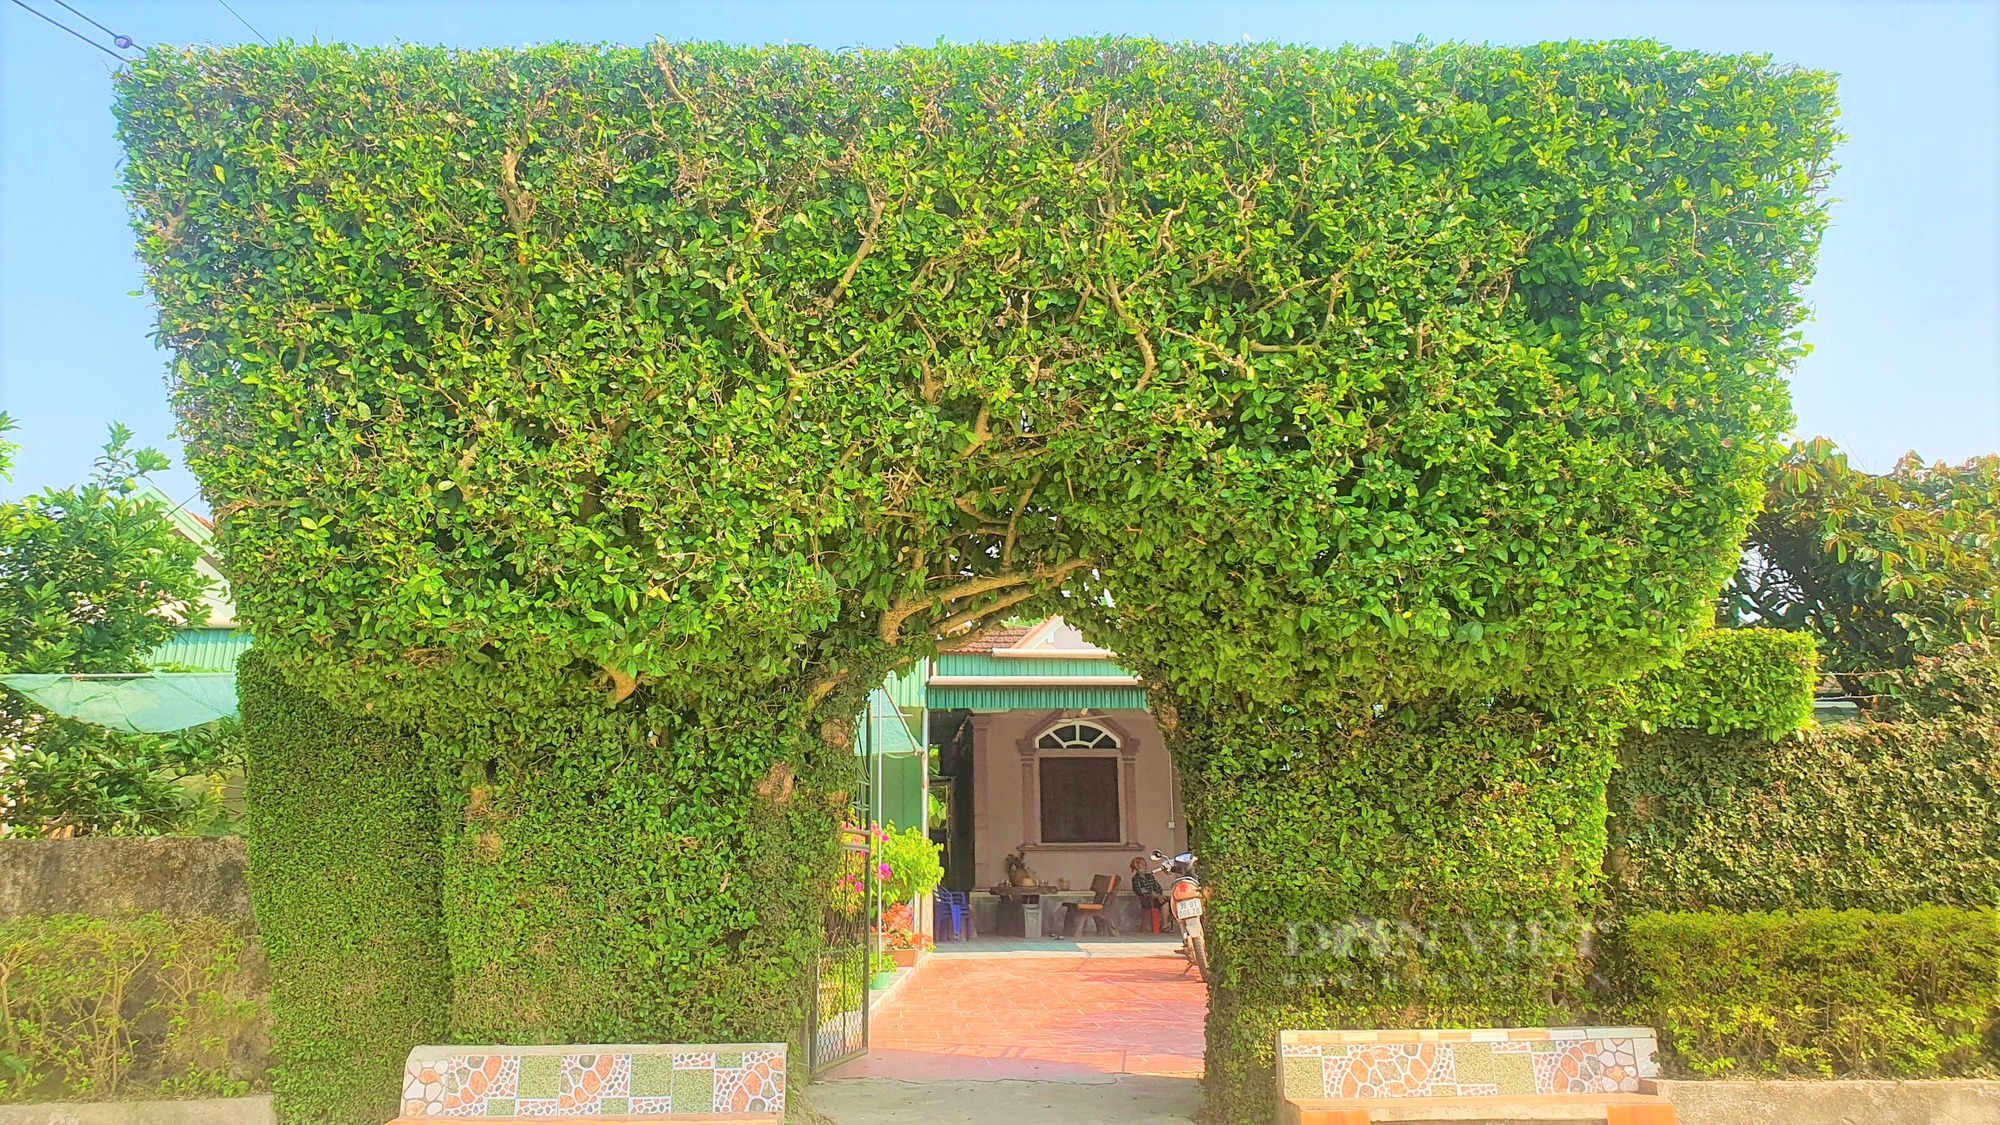 Lạ mắt những cổng nhà, hàng rào được kết bằng cây xanh trăm năm ở làng quê Hà Tĩnh - Ảnh 6.